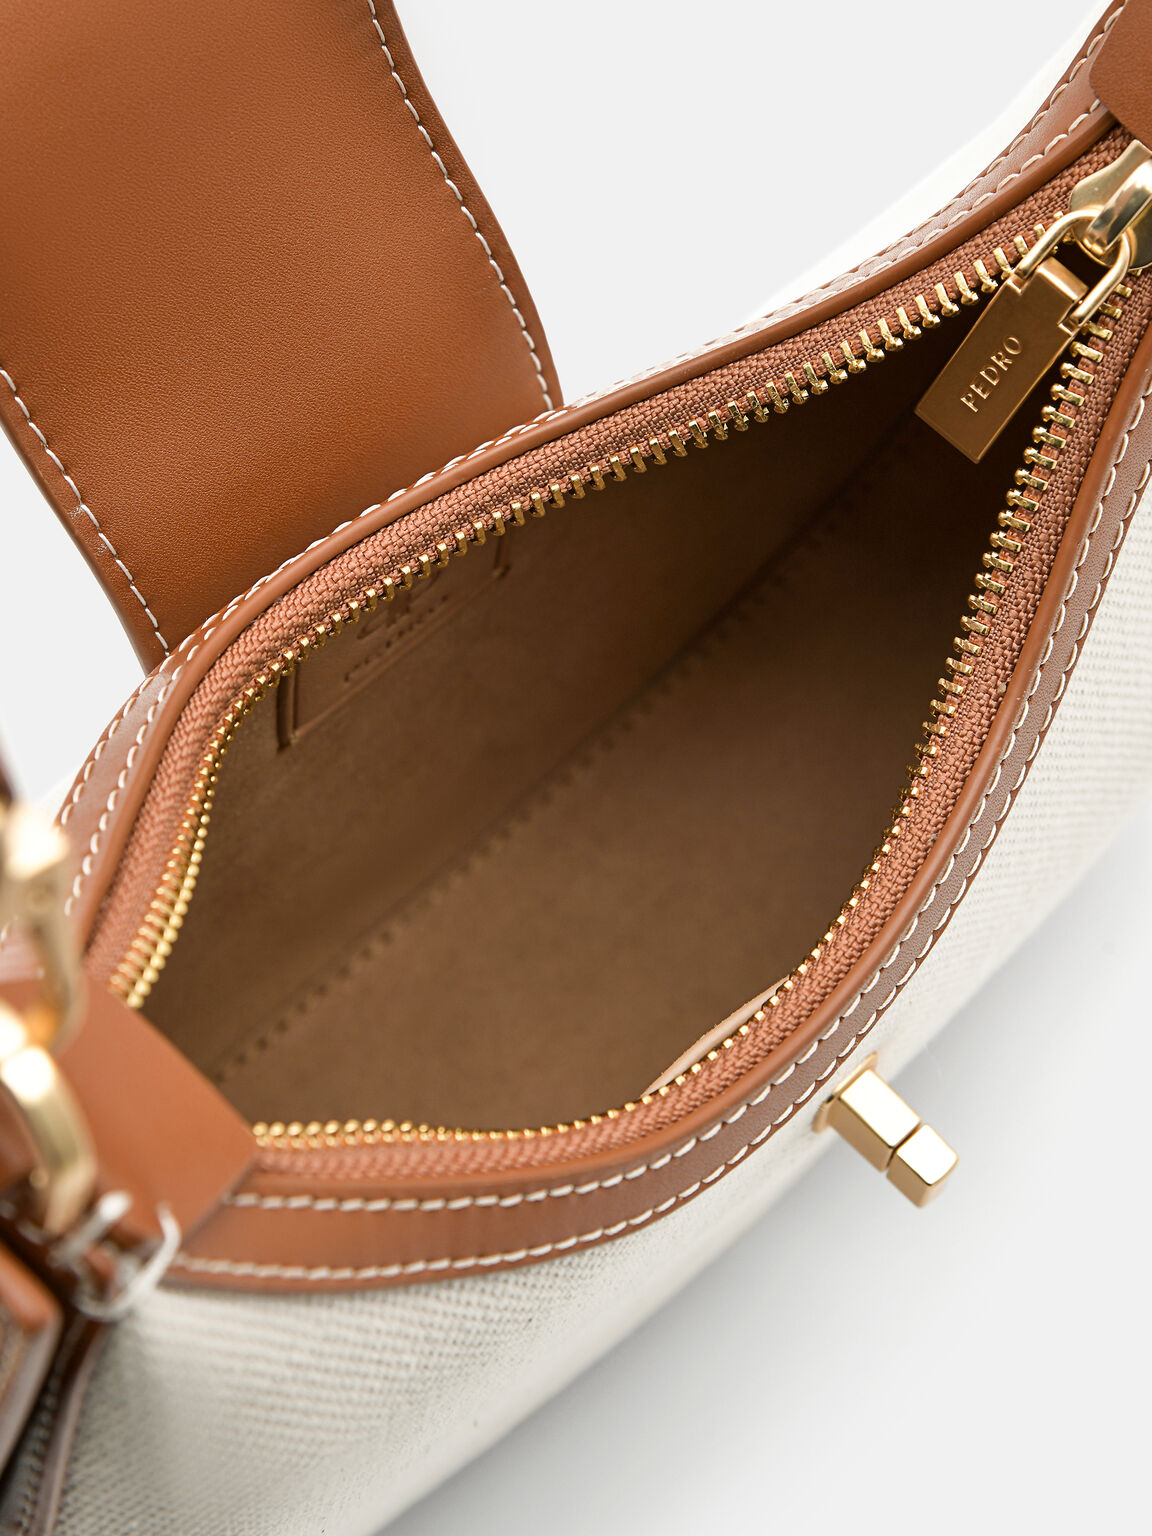 Túi hobo hình bán nguyệt Icon Leather, Cognac2, hi-res